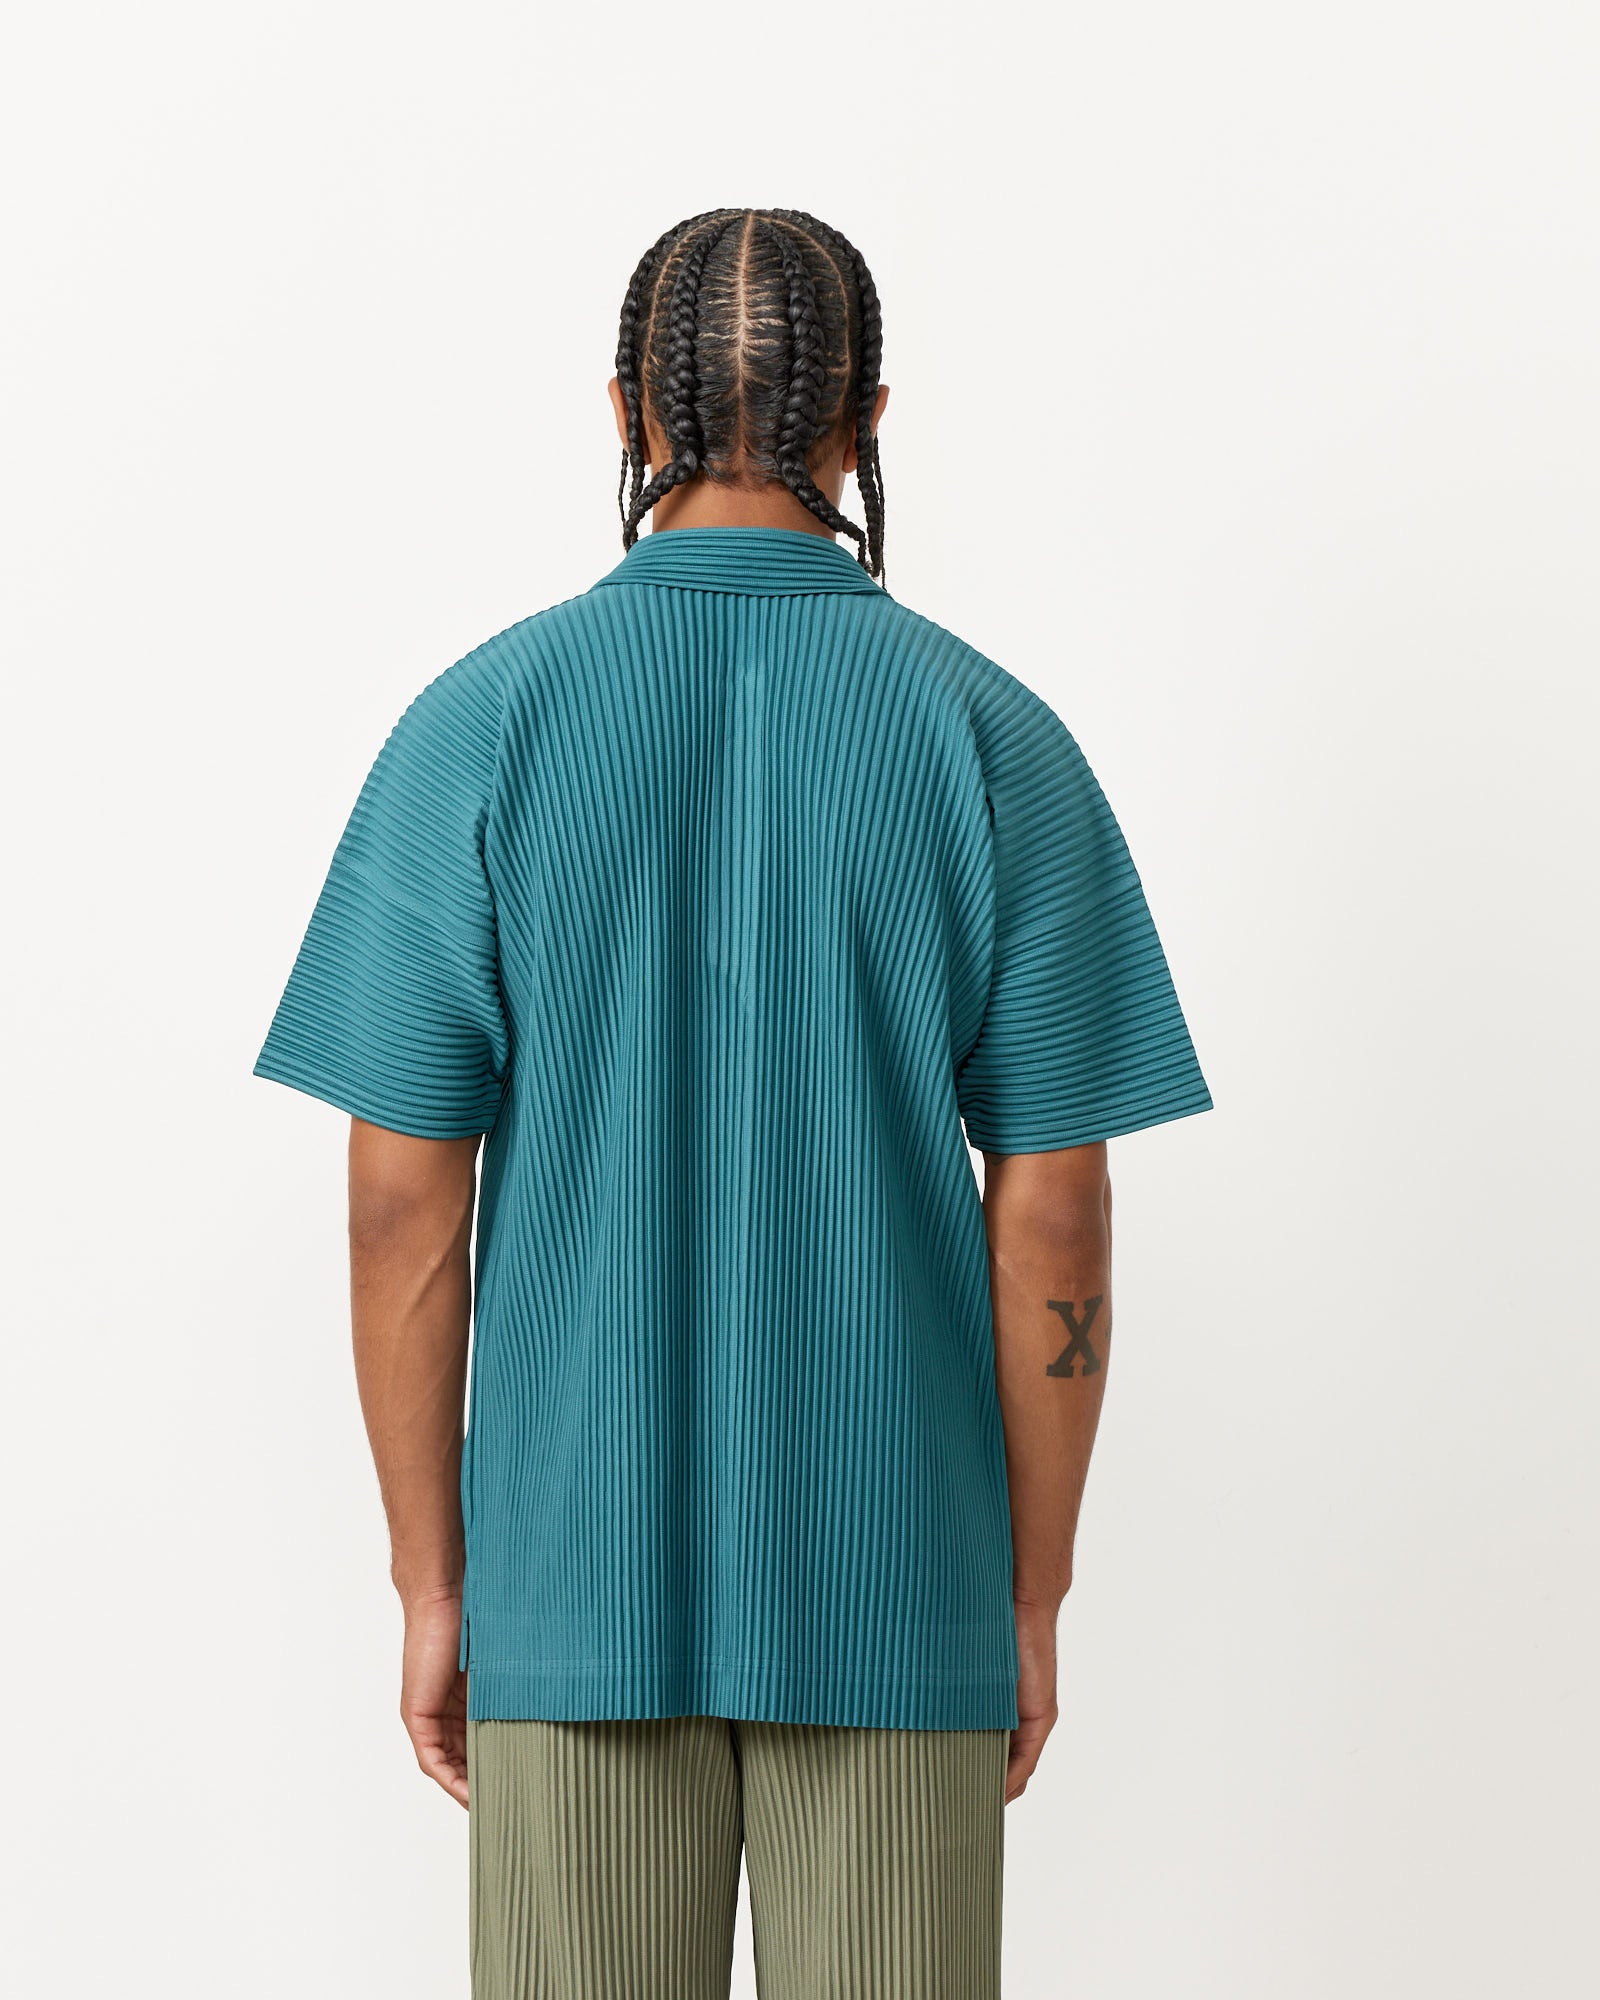 MC May Shirt in Teal Green